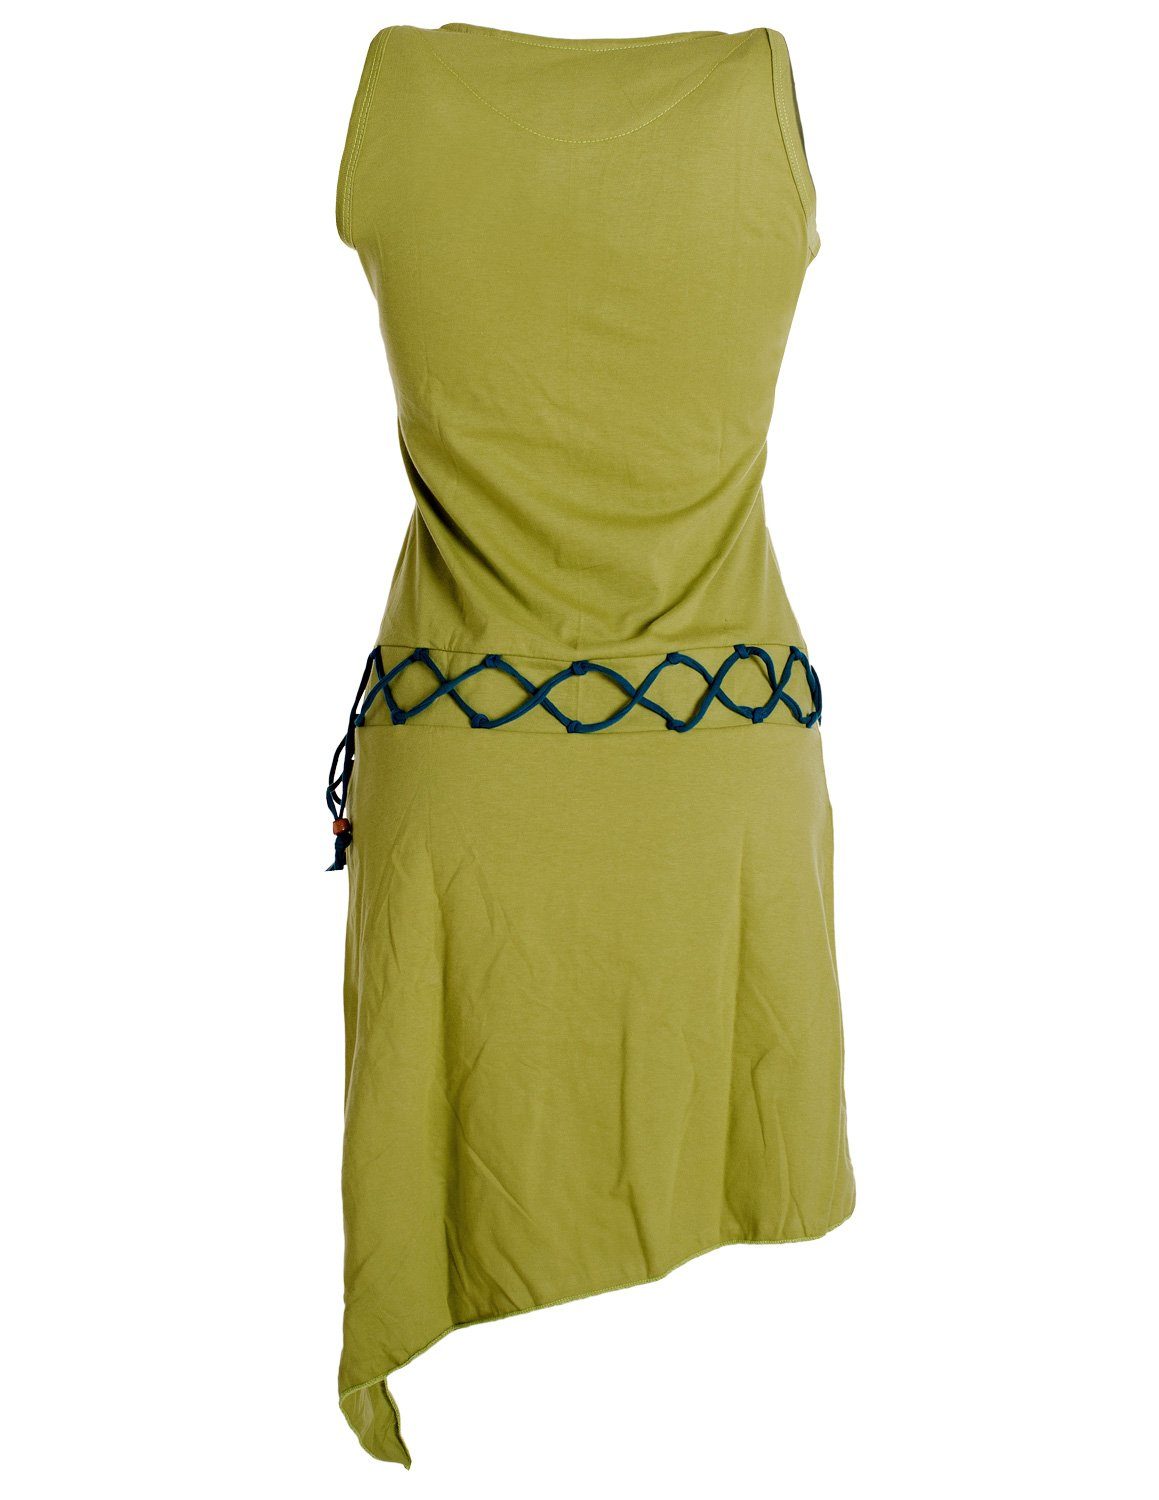 Vishes Boho, Elfen Kleid Goa Beinausschnitt Hippie, Sommerkleid hellgrün Style Gürtel-Schnürung asymmetrisch Ärmelloses